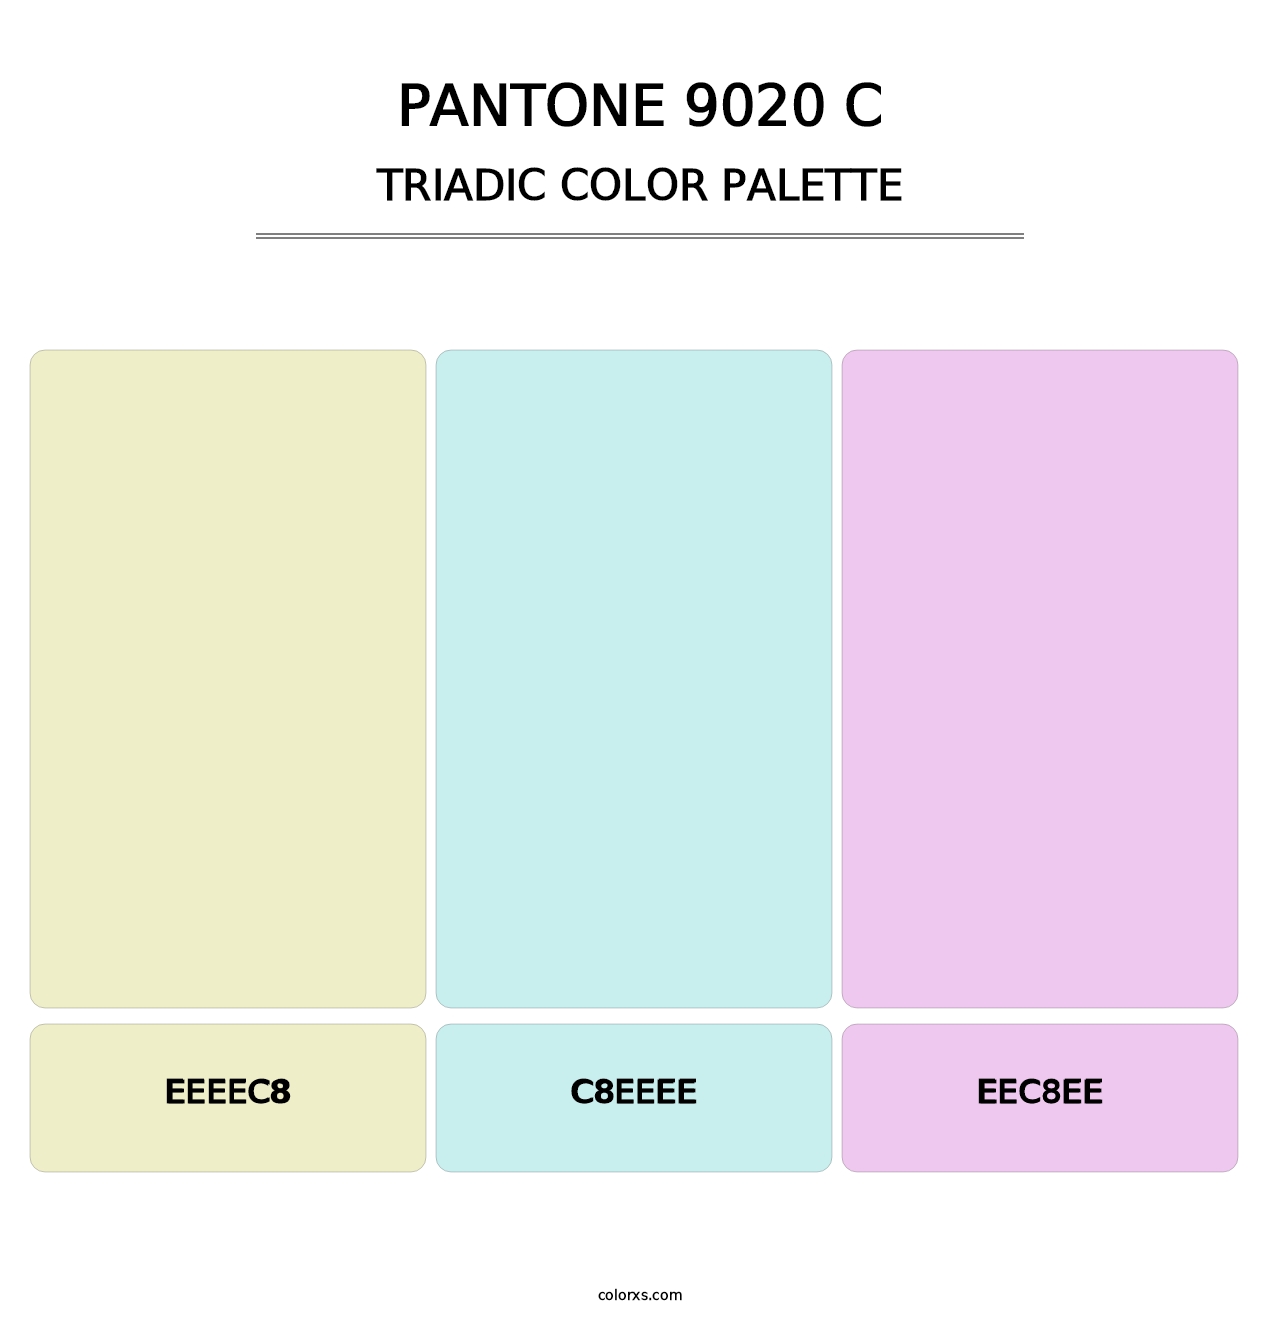 PANTONE 9020 C - Triadic Color Palette